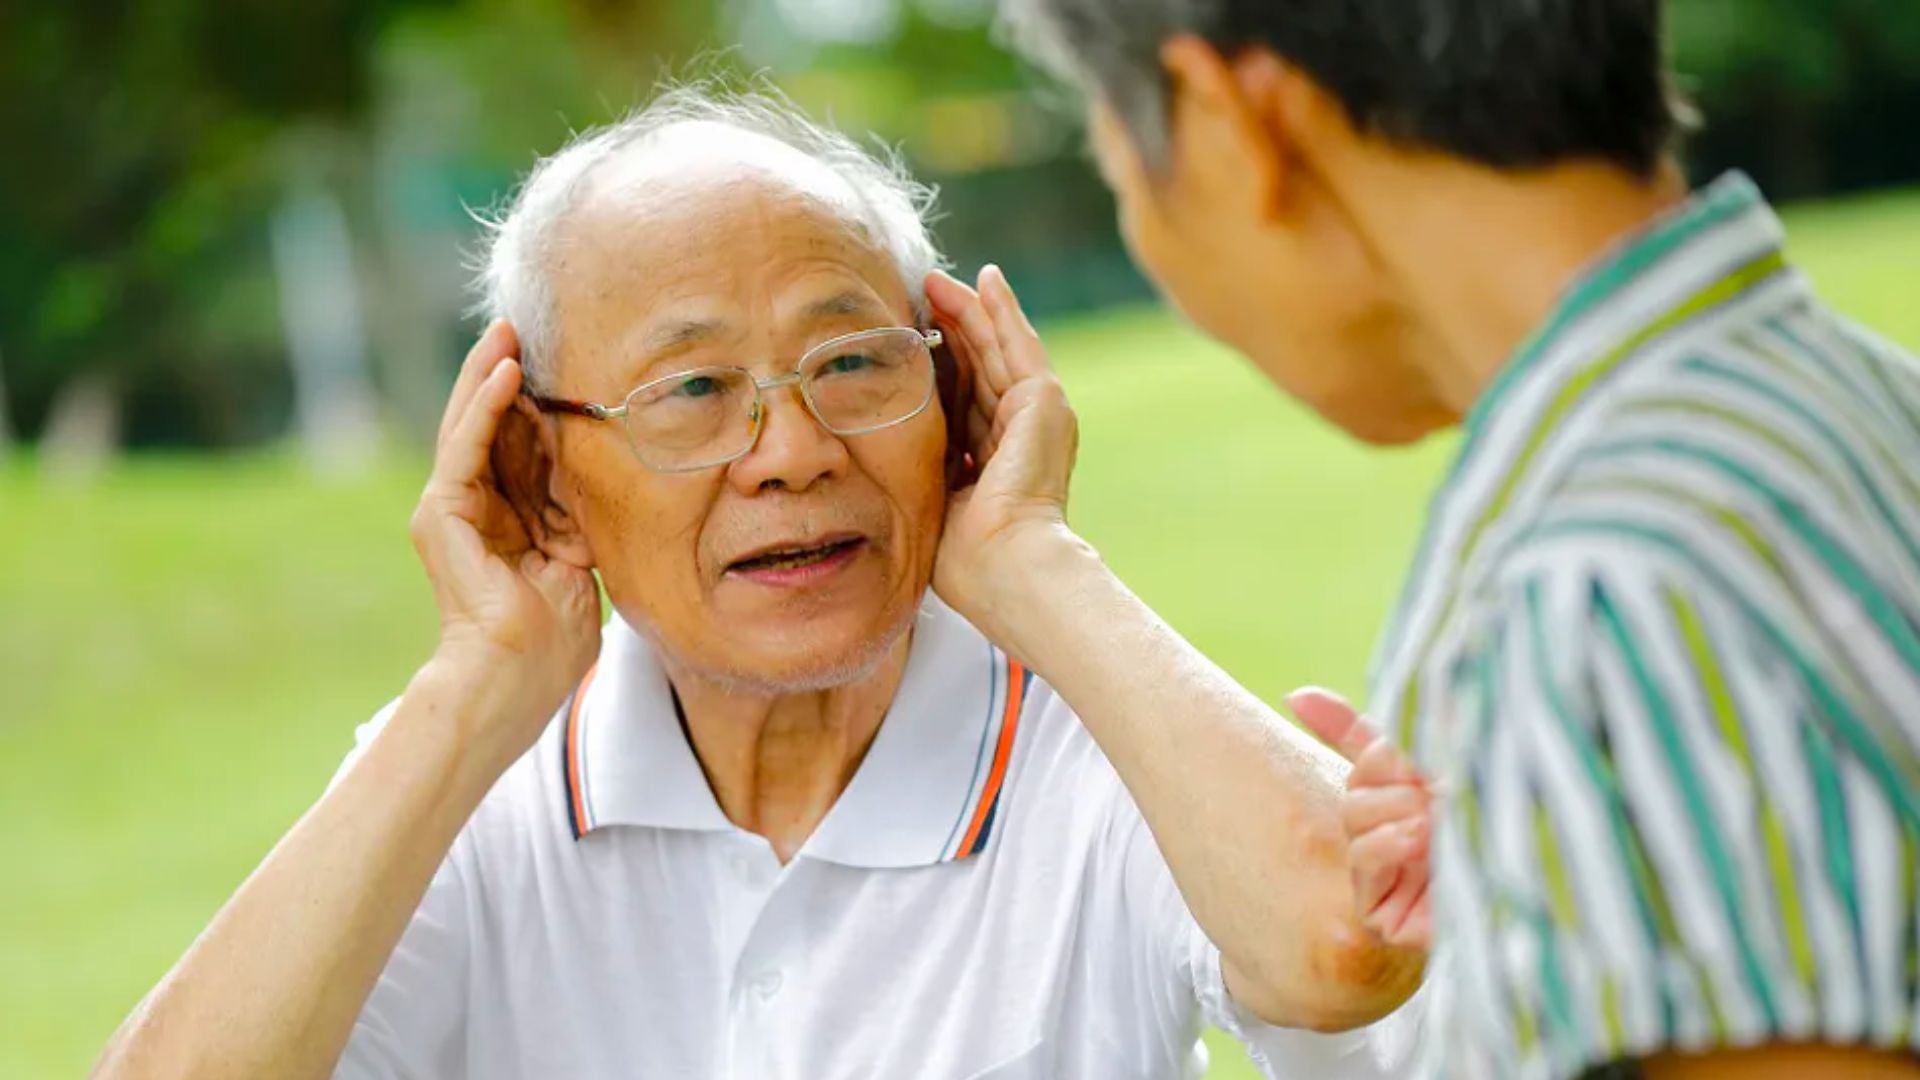 Apakah Anda Mengalami Presbycusis - Penurunan Pendengaran Terkait Usia?